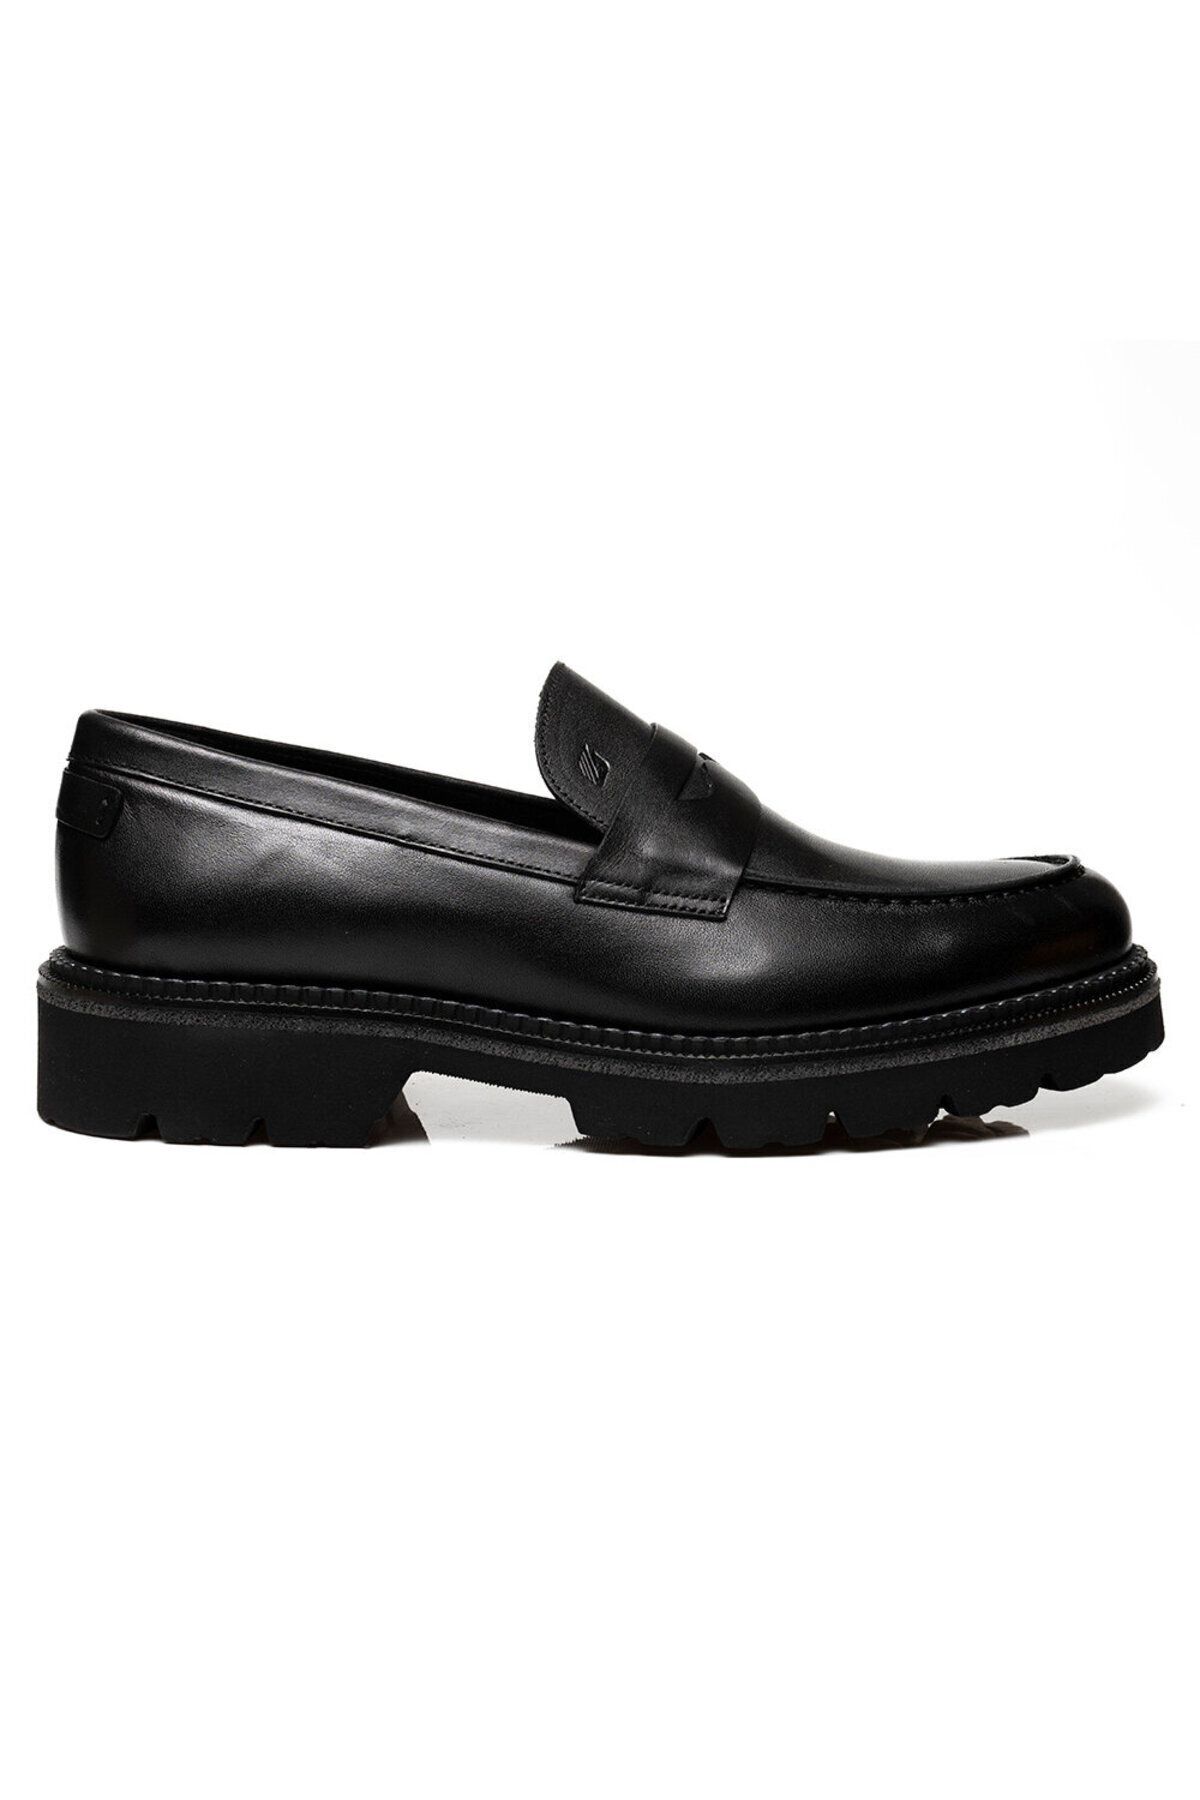 Greyder Erkek Siyah Hakiki Deri Klasik Ayakkabı 3k1ua75135